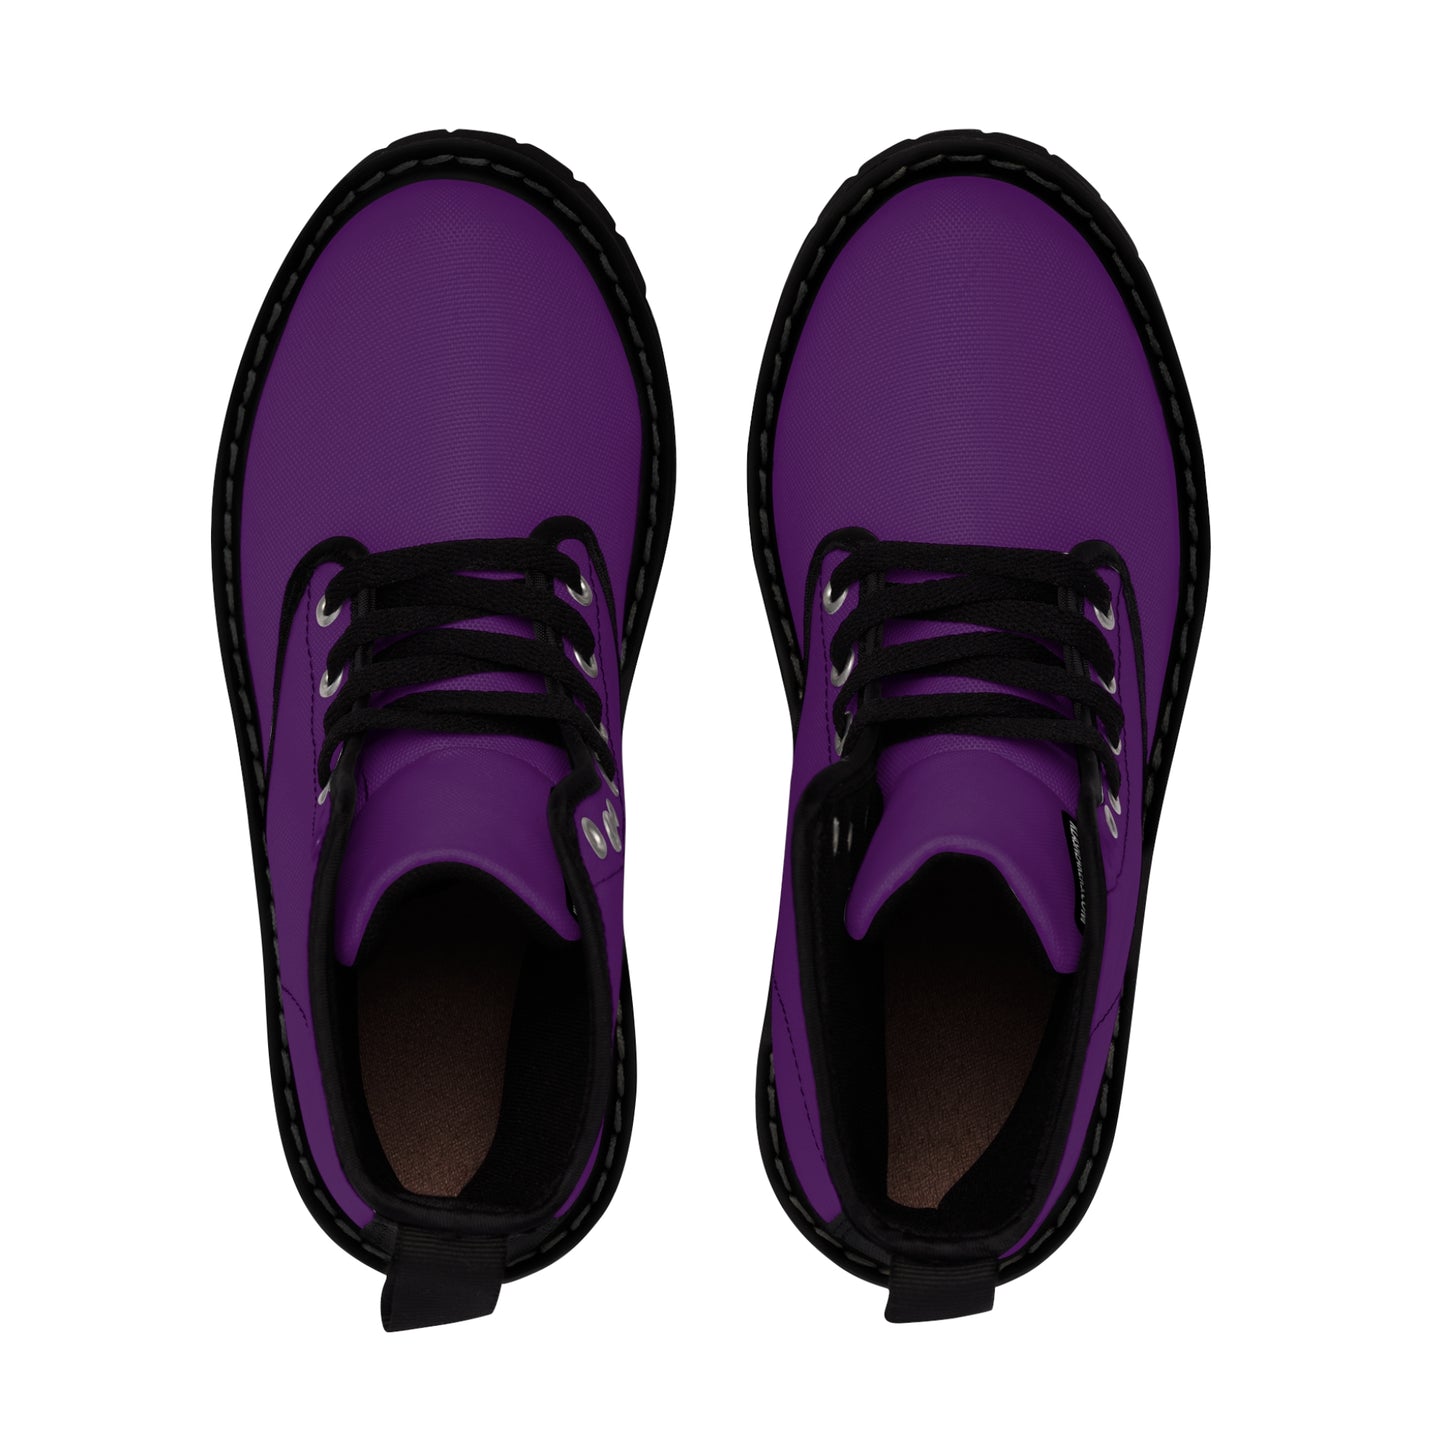 Women's Canvas Boots - Royal Purple US 11 Black sole